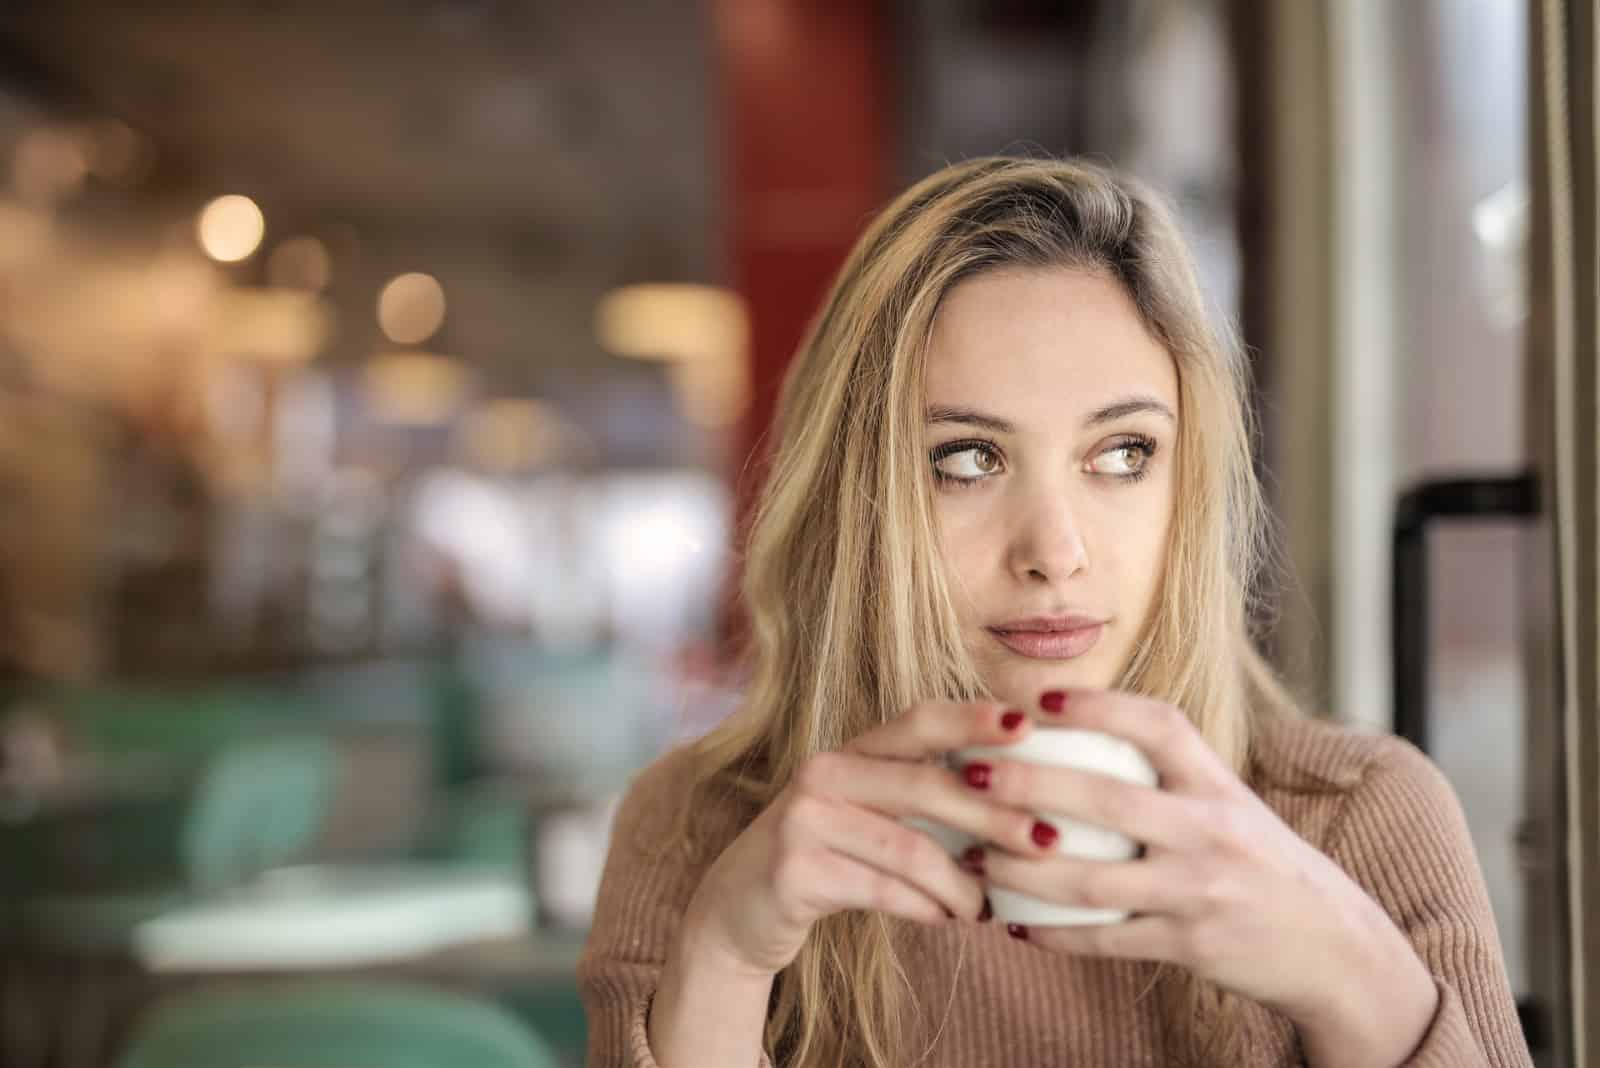 Femme buvant du café, assise dans un café